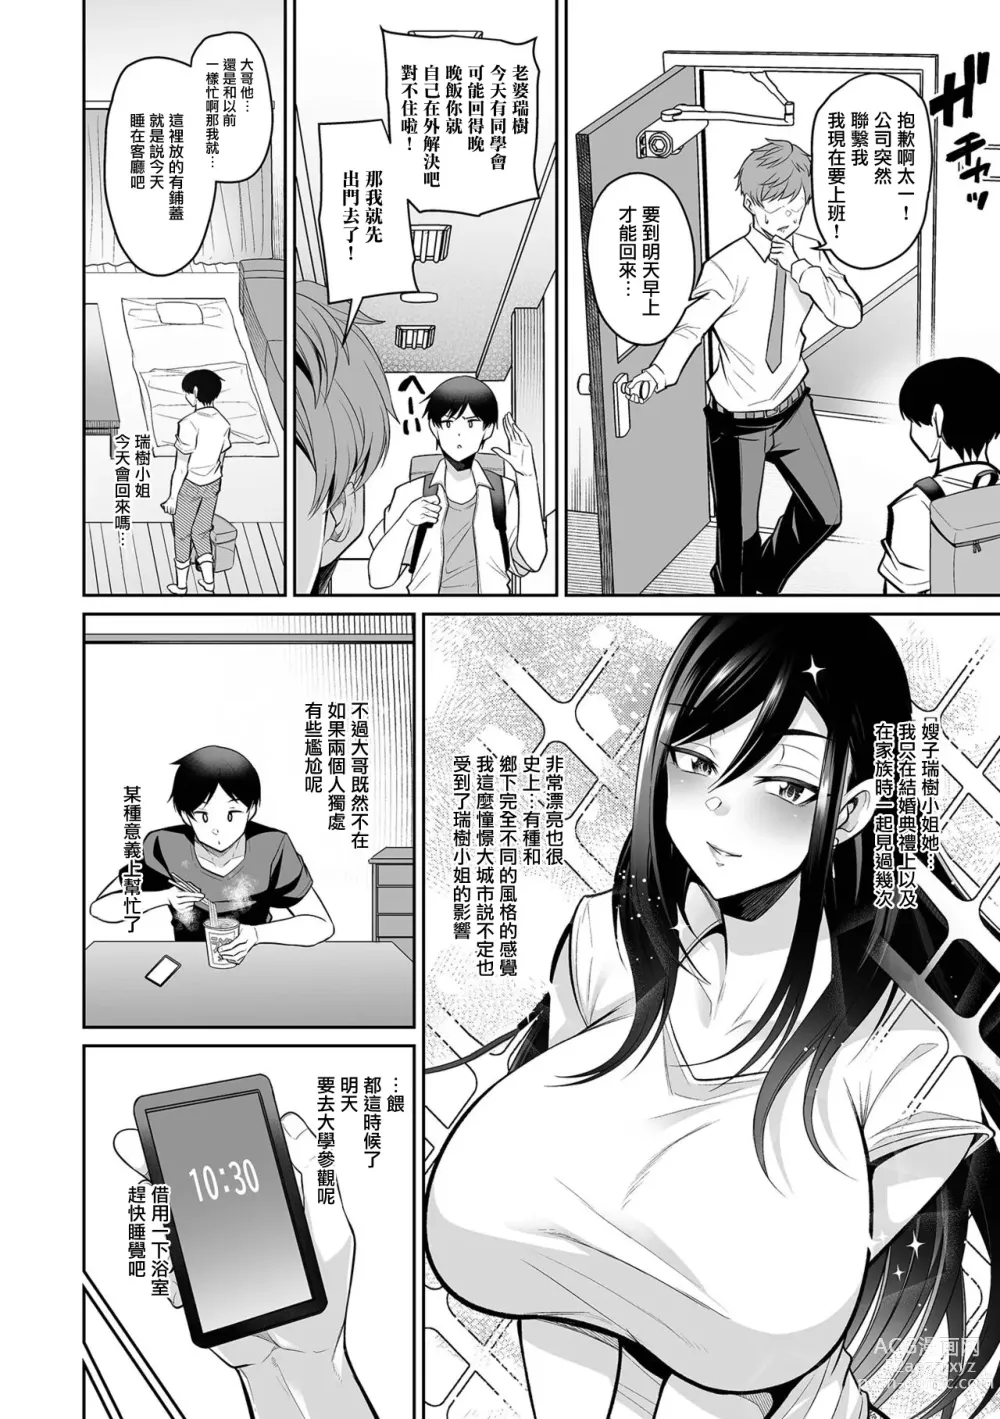 Page 2 of manga NikYobai Aniyome